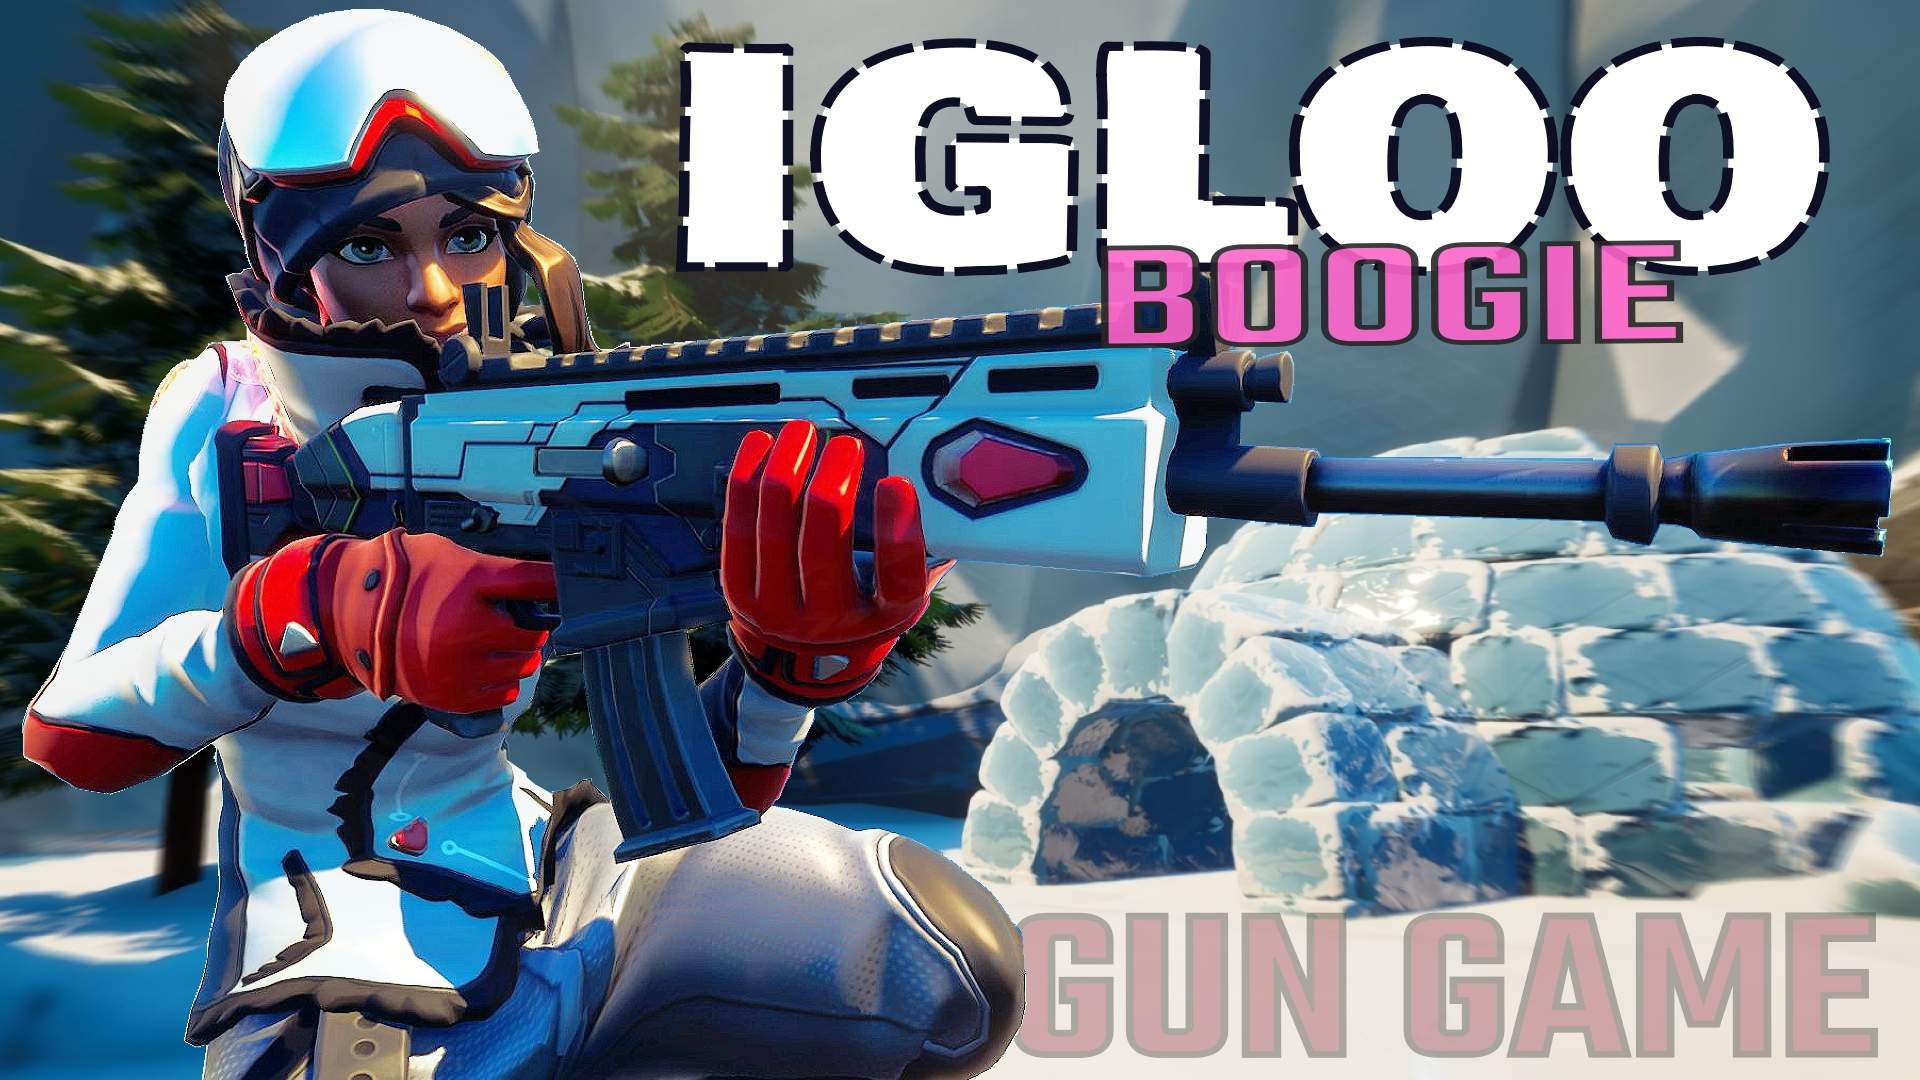 Igloo Boogie Gun Game